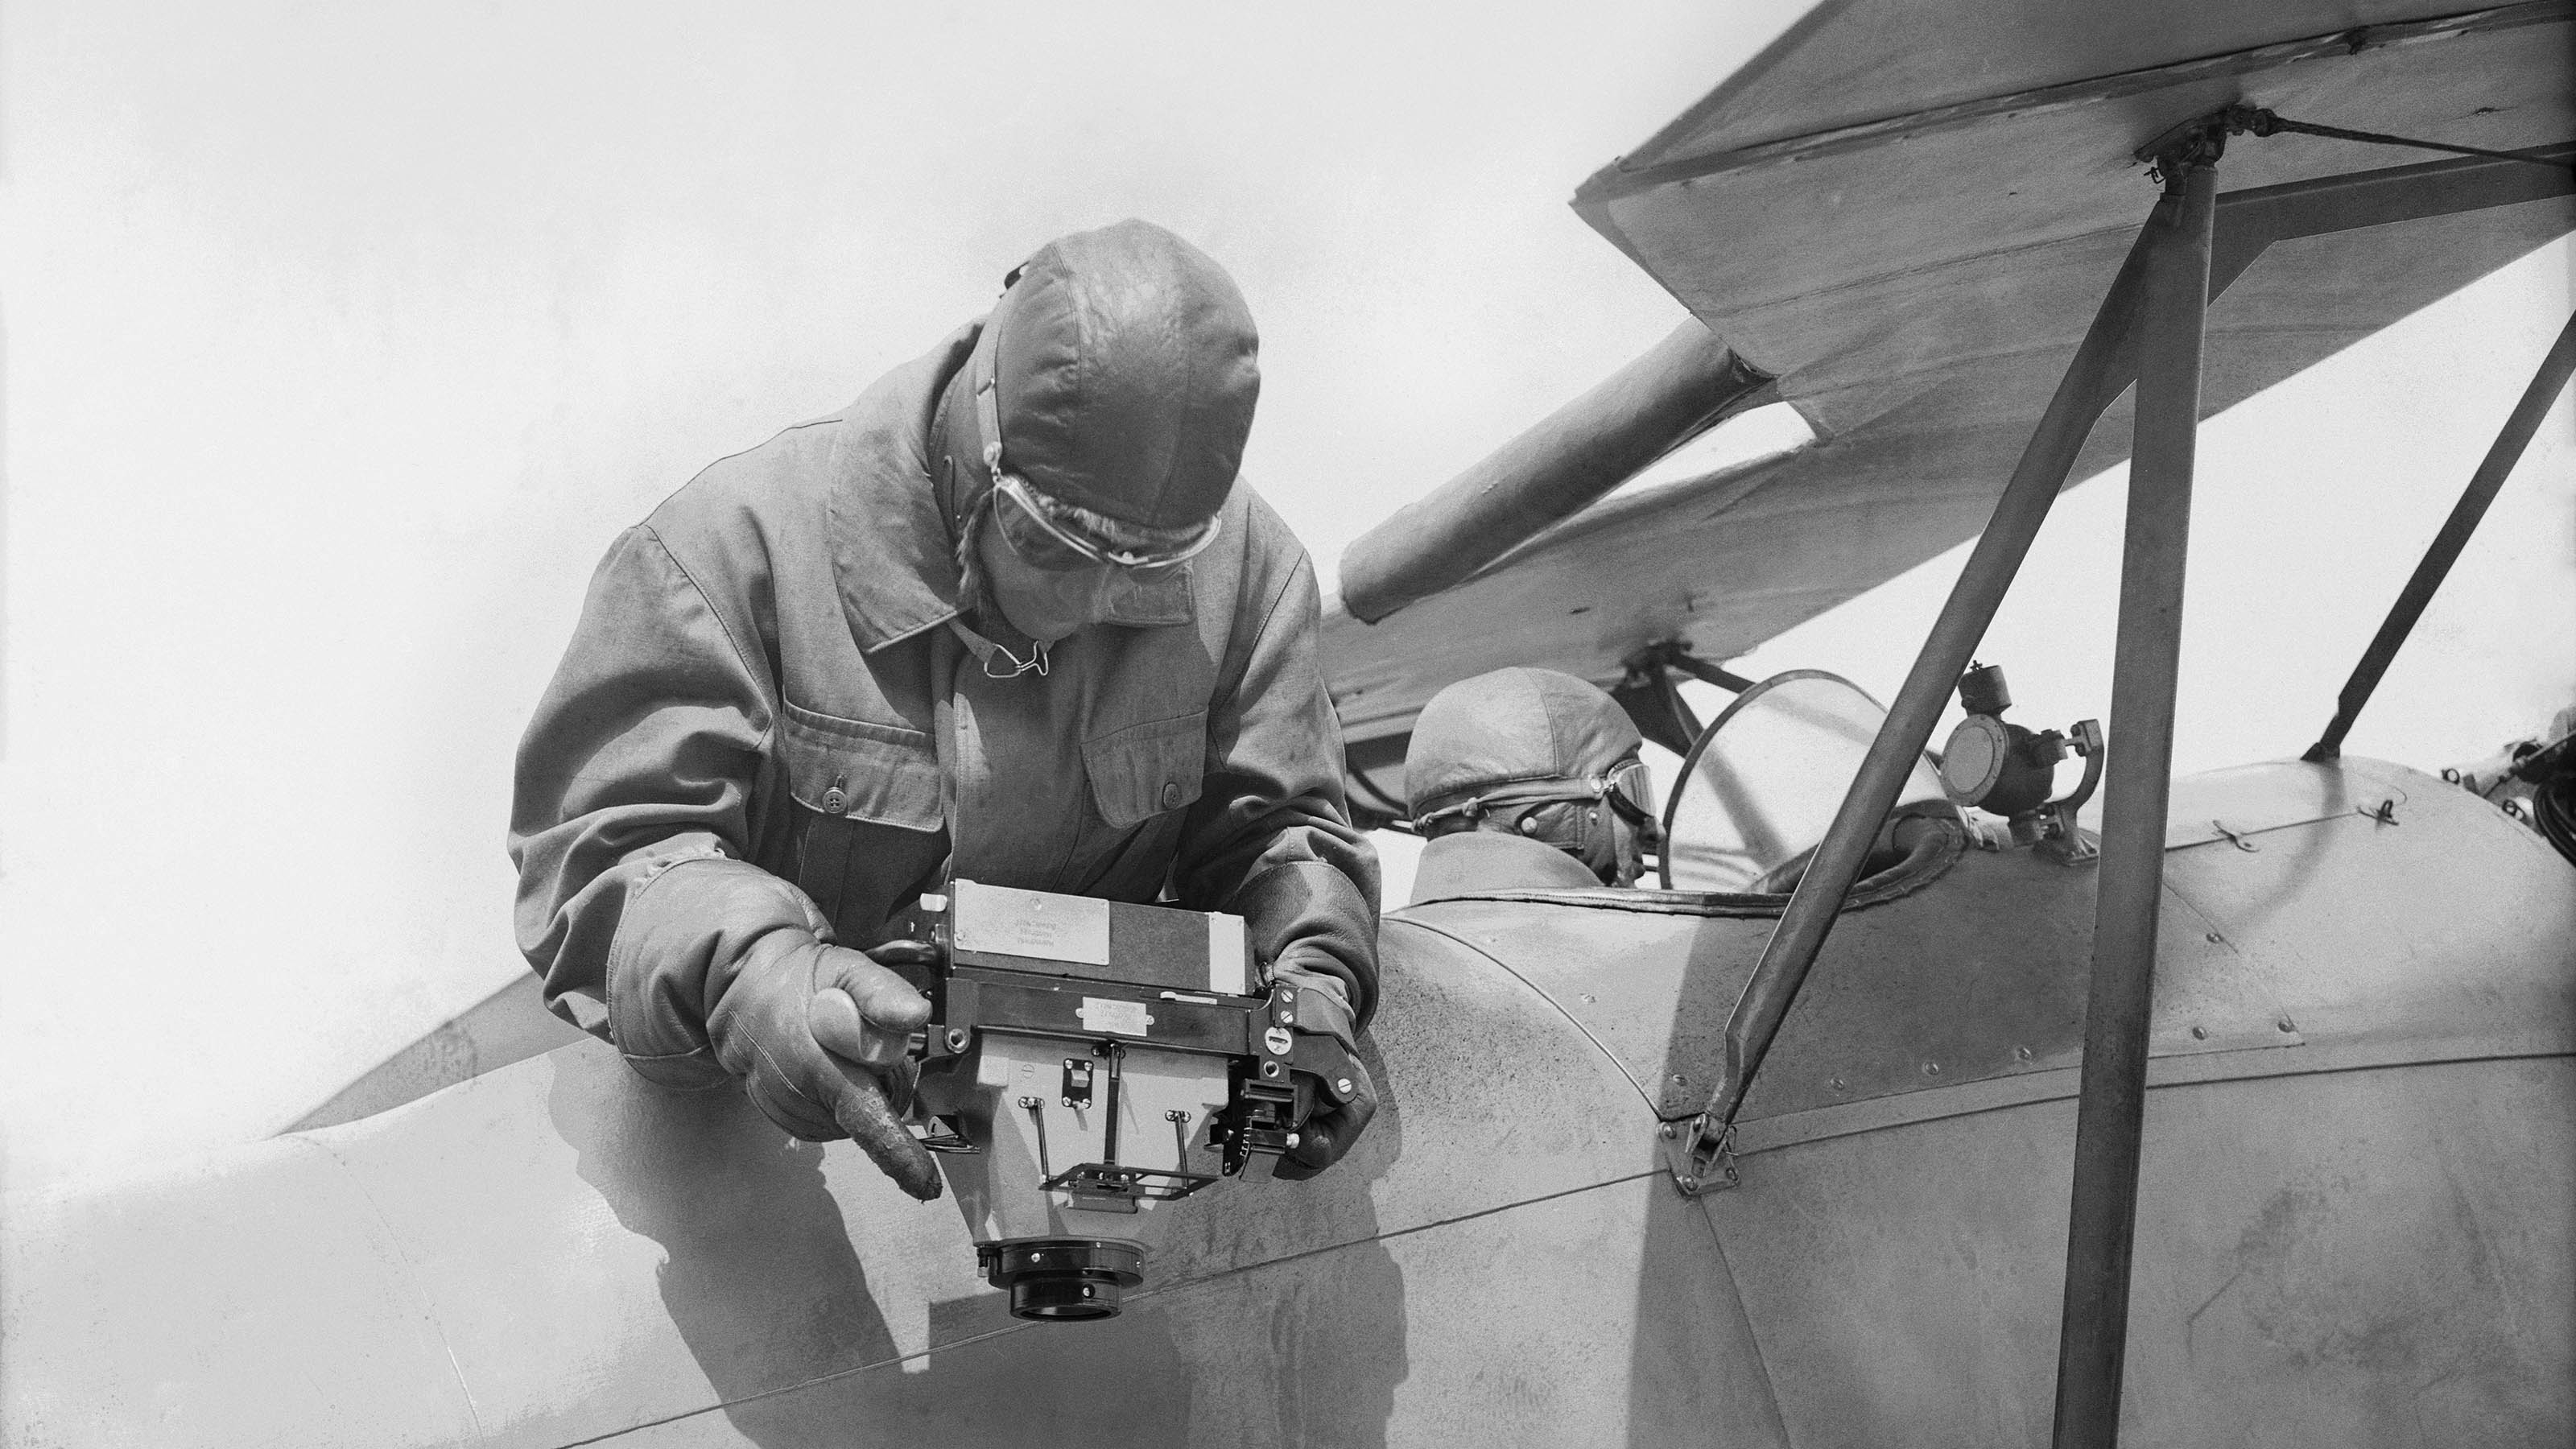 Un pilote est assis aux commandes d'un avion, tandis que l'observateur tient l'appareil photo aérien à la main par-dessus bord et photographie vers le bas.